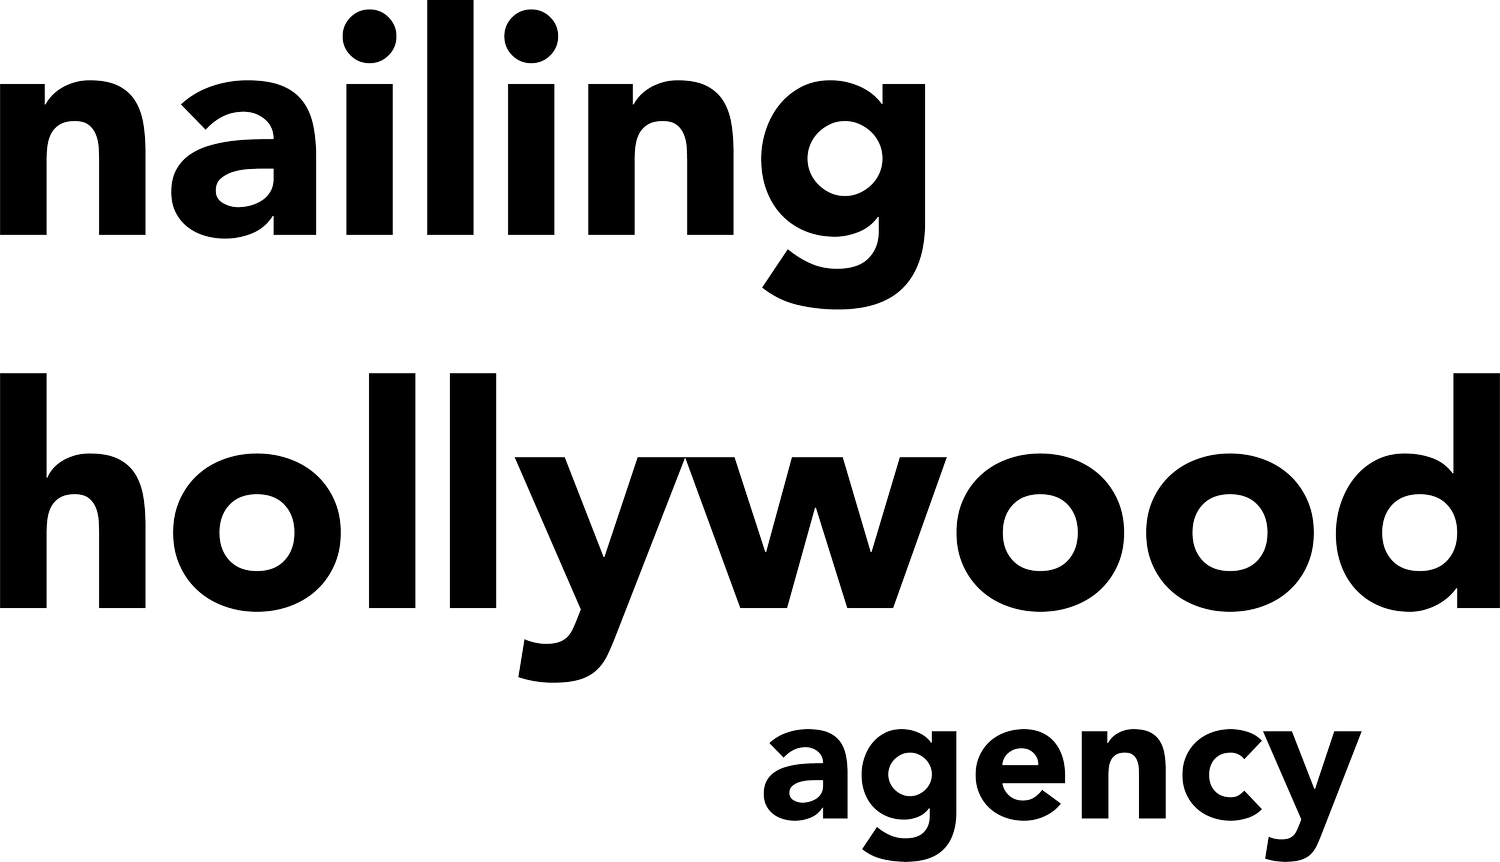 Nailing Hollywood Agency